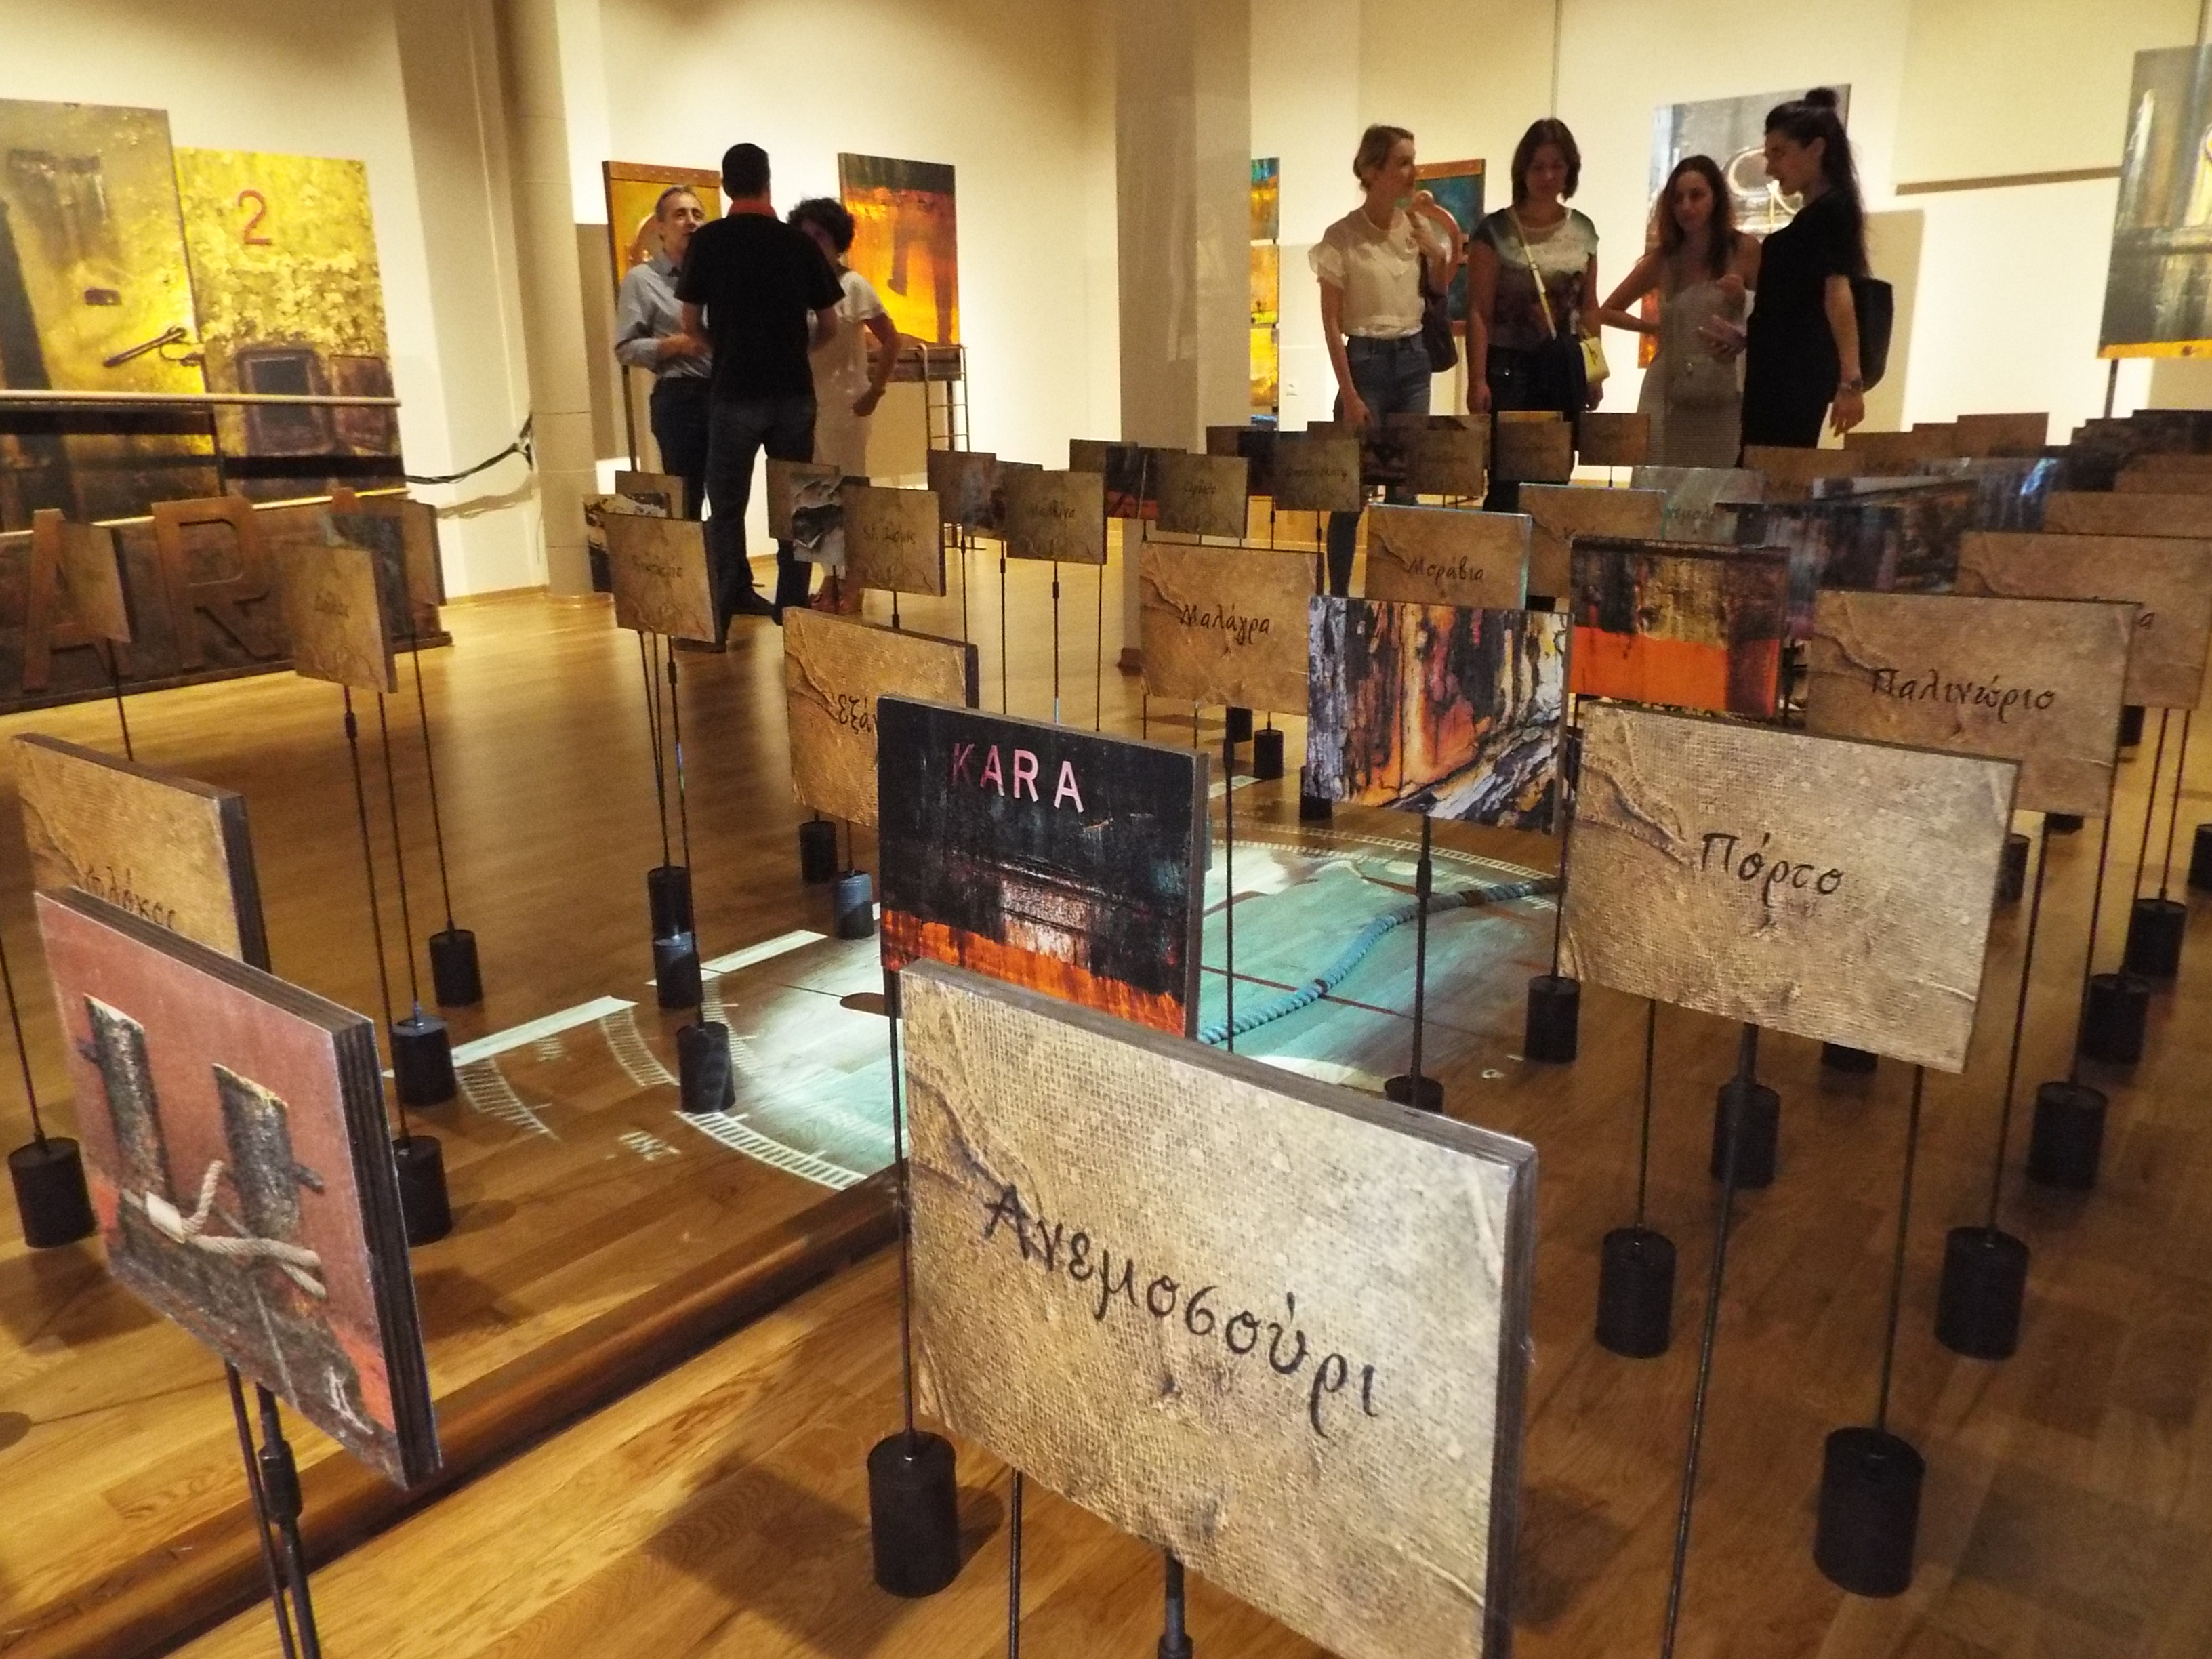 Θαλασσινή αύρα σε εξαίρετη έκθεση εικαστικών στο Μουσείο Τσιτσάνη